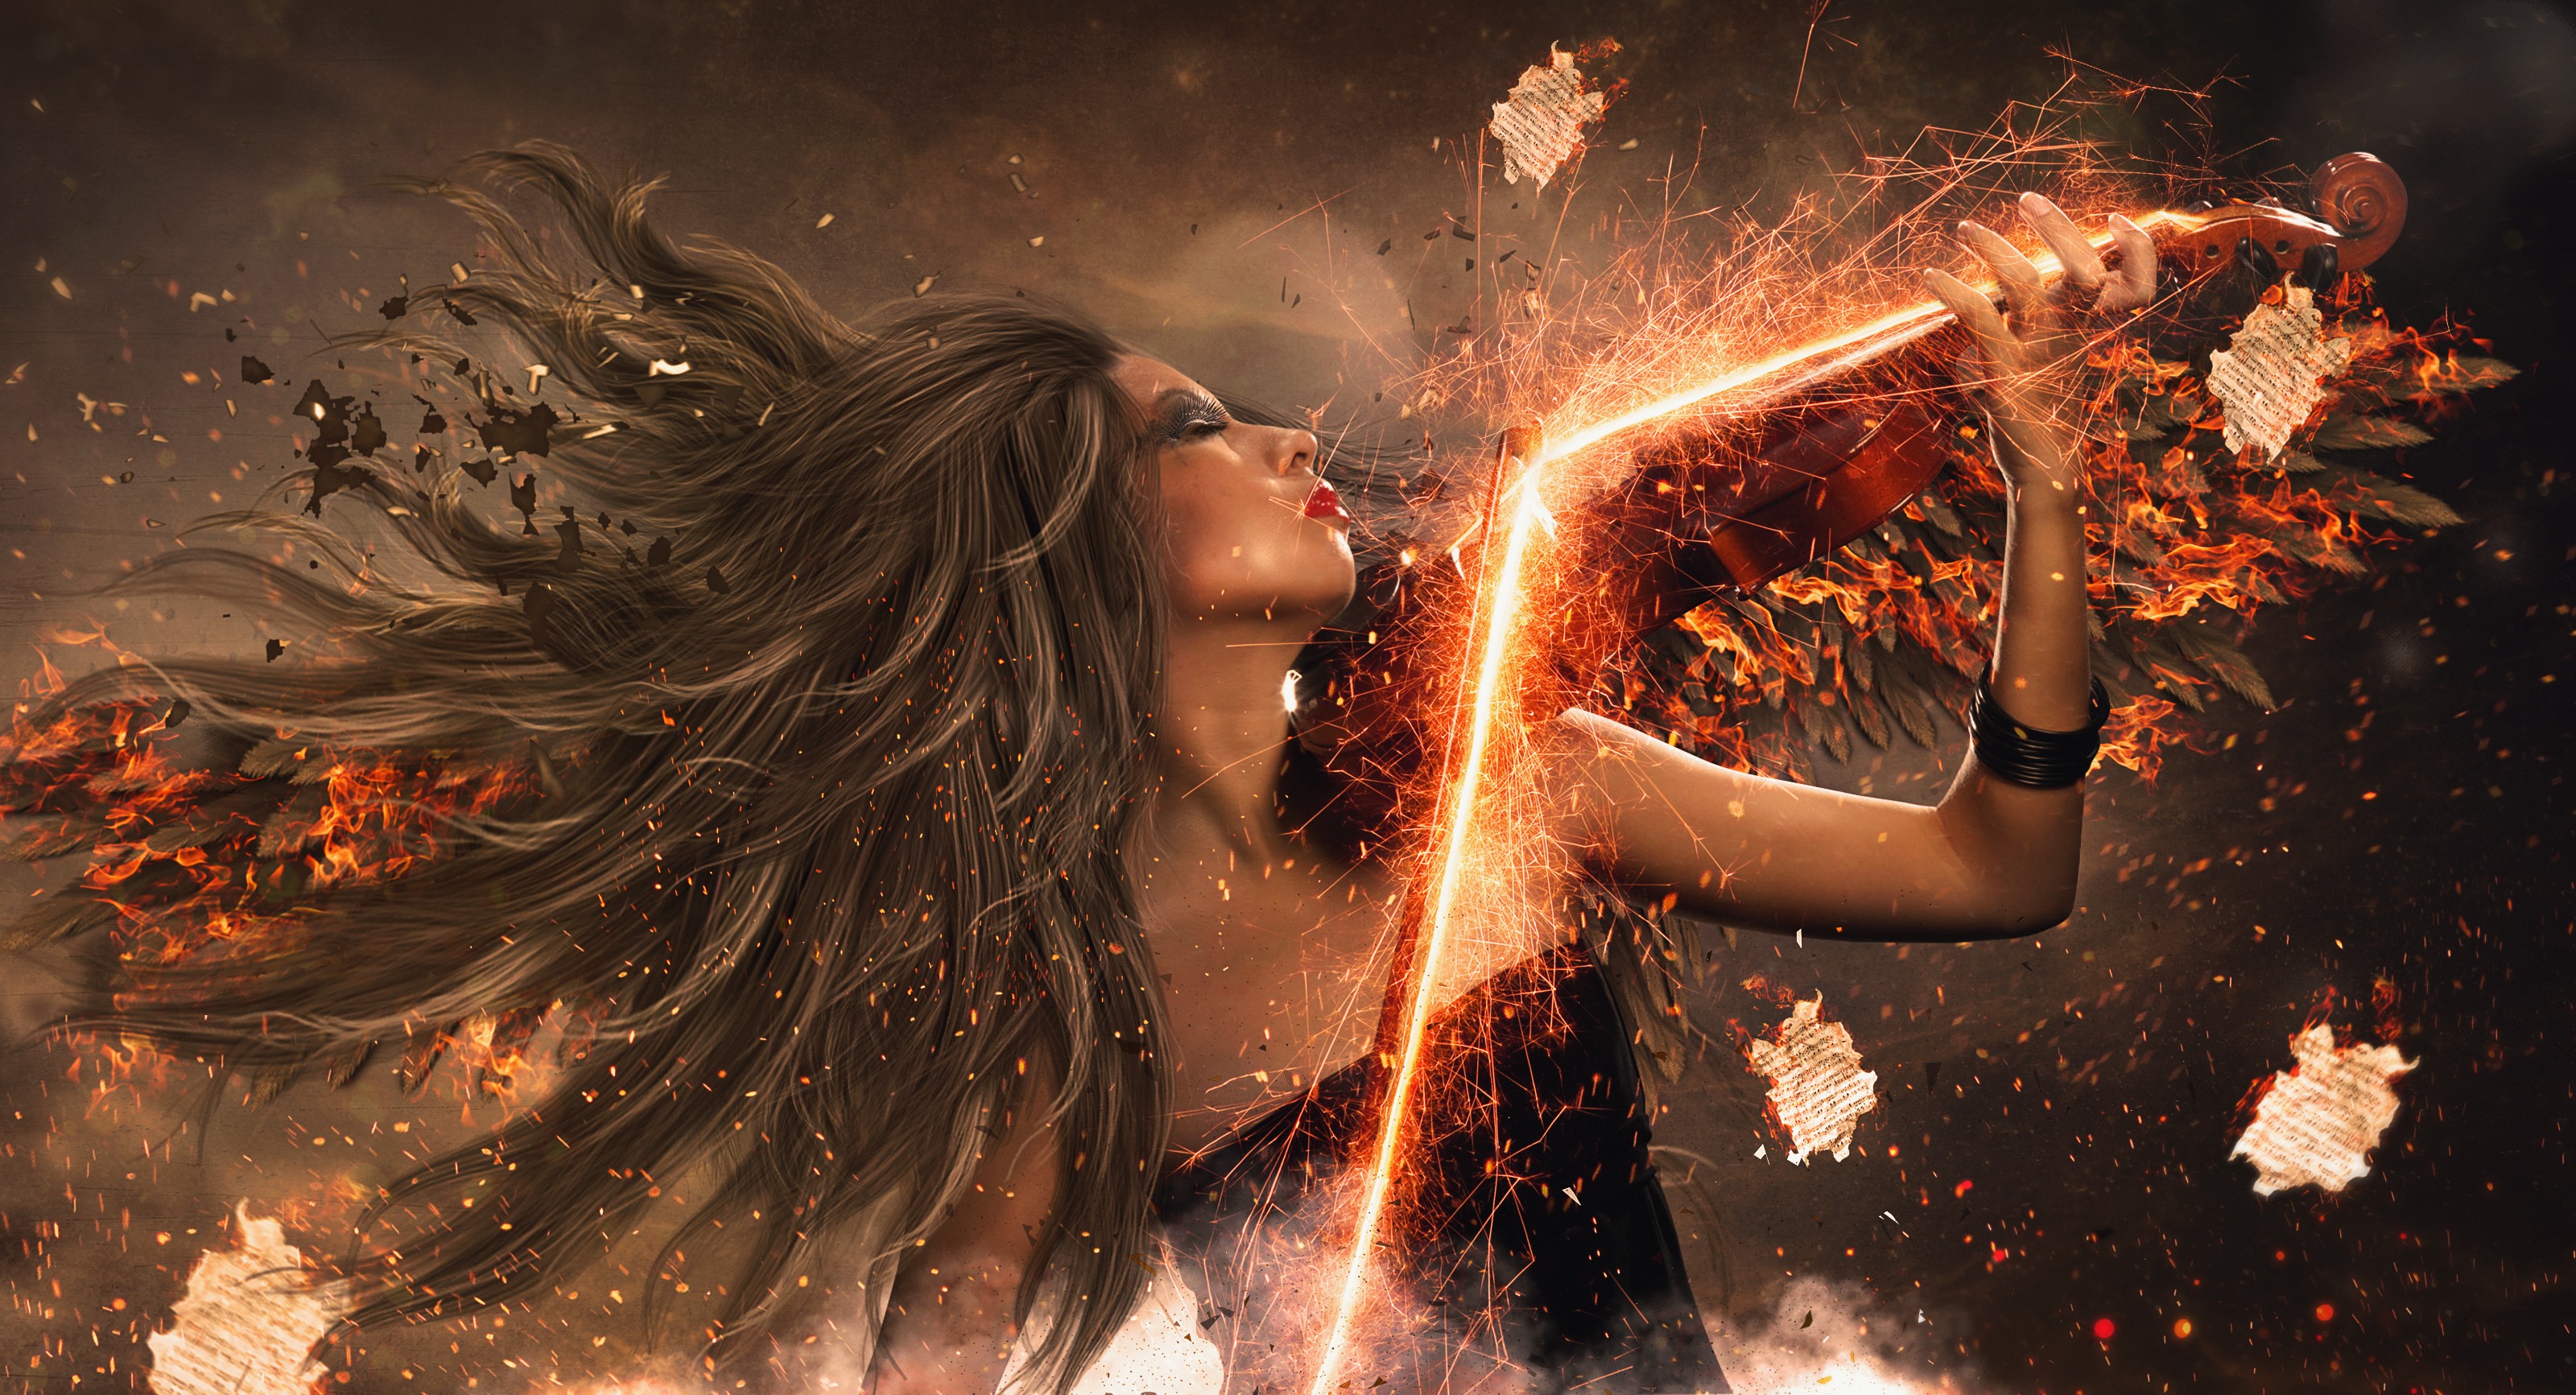 Скрипка боль. Девушка и огонь. Девушка магия. Взрыв эмоций. Фотосессия с огнем.